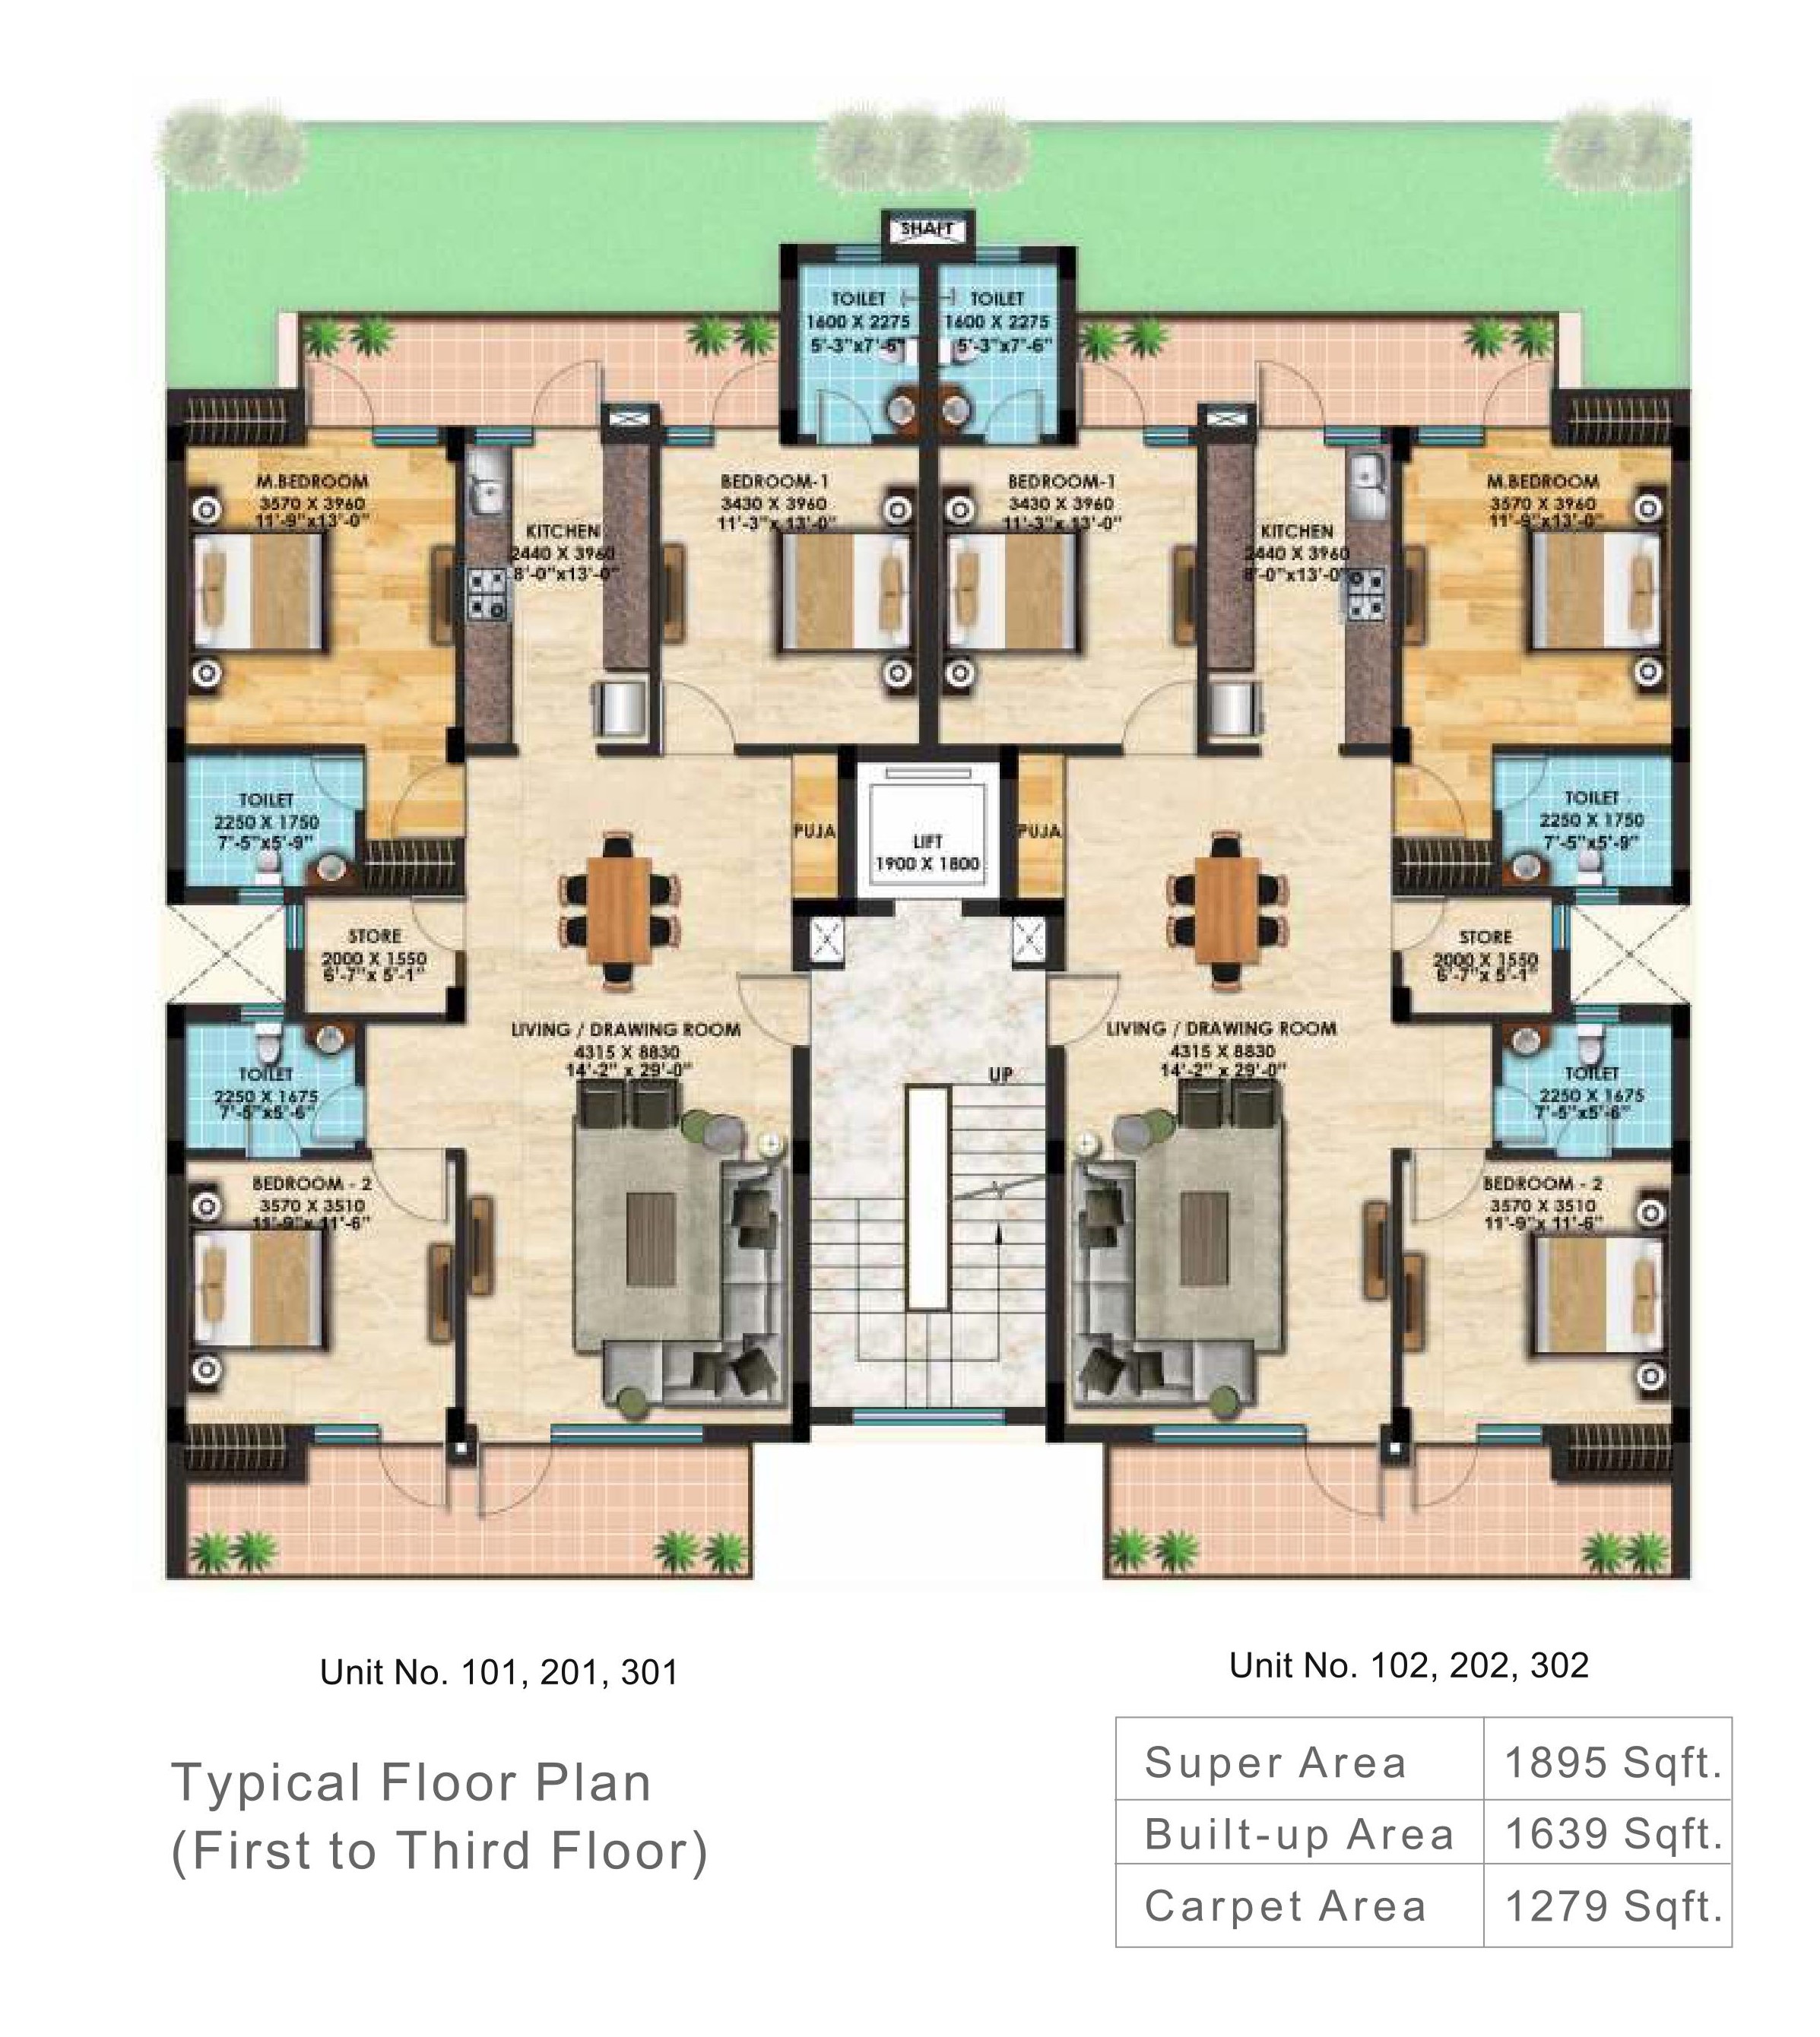 Typical Floor Plan (1st to 3rd Floor)